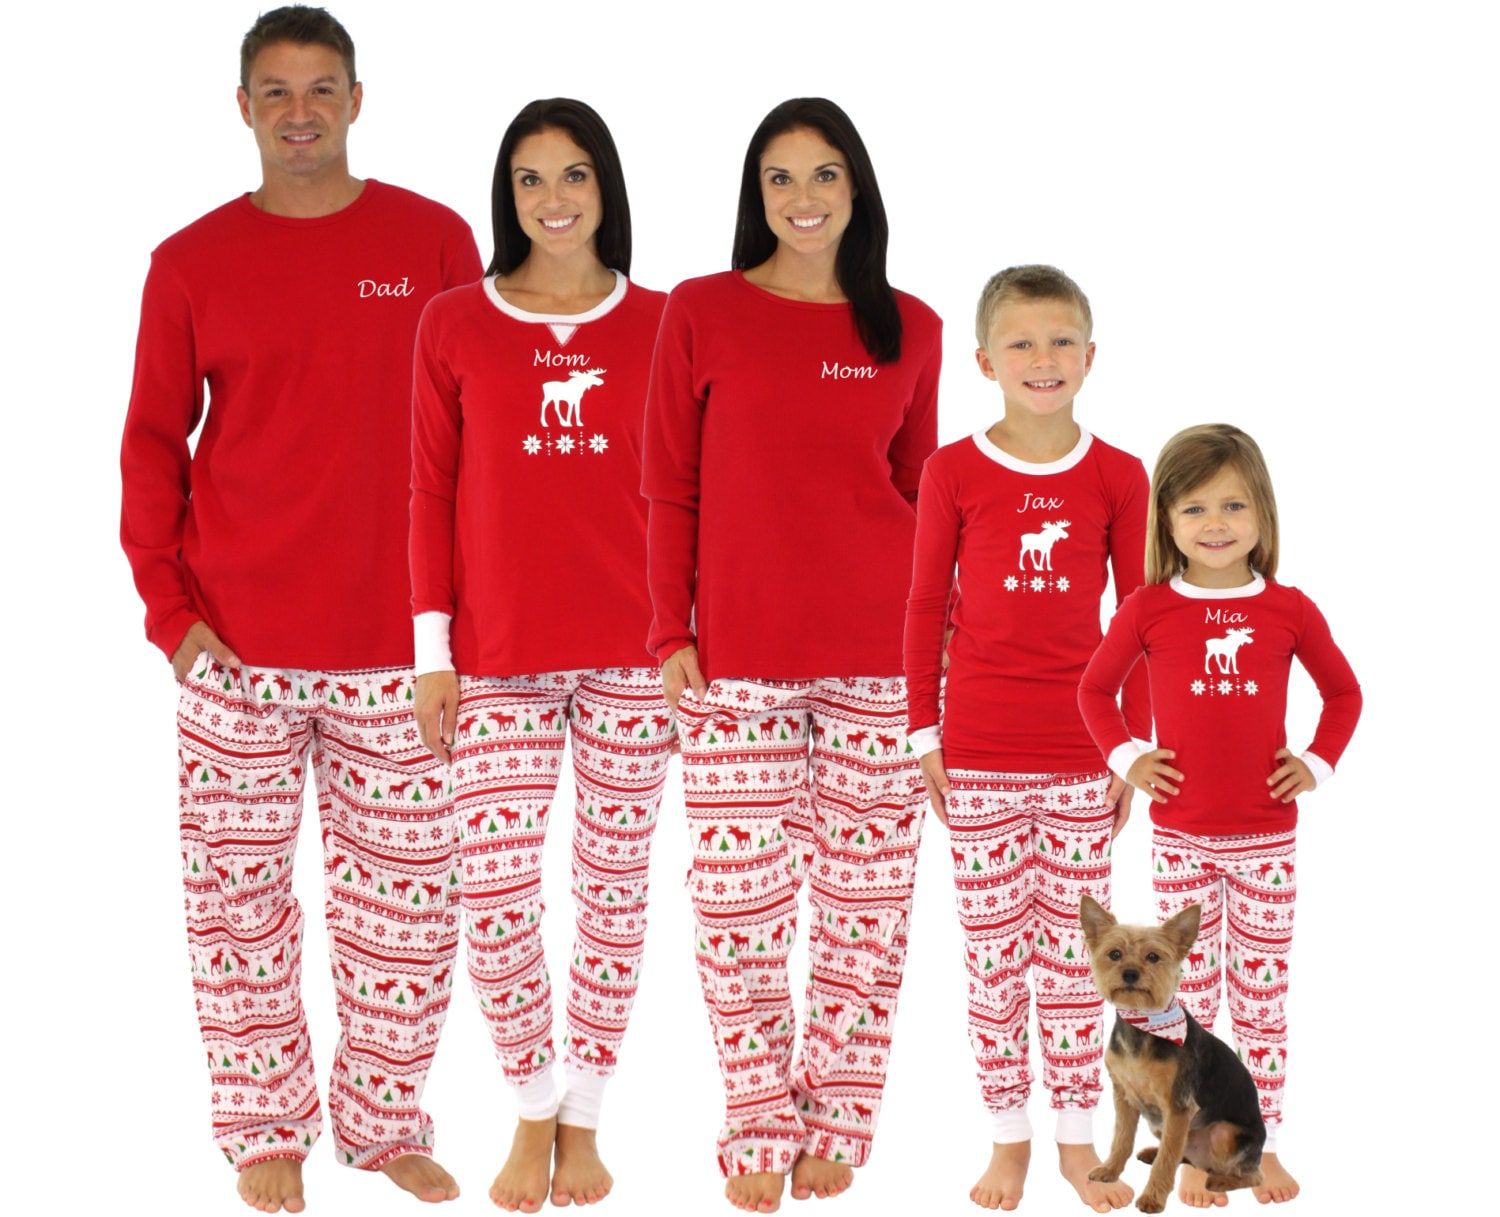 Embroidered Family Christmas Pajamas Personalized by FamilyPajamas